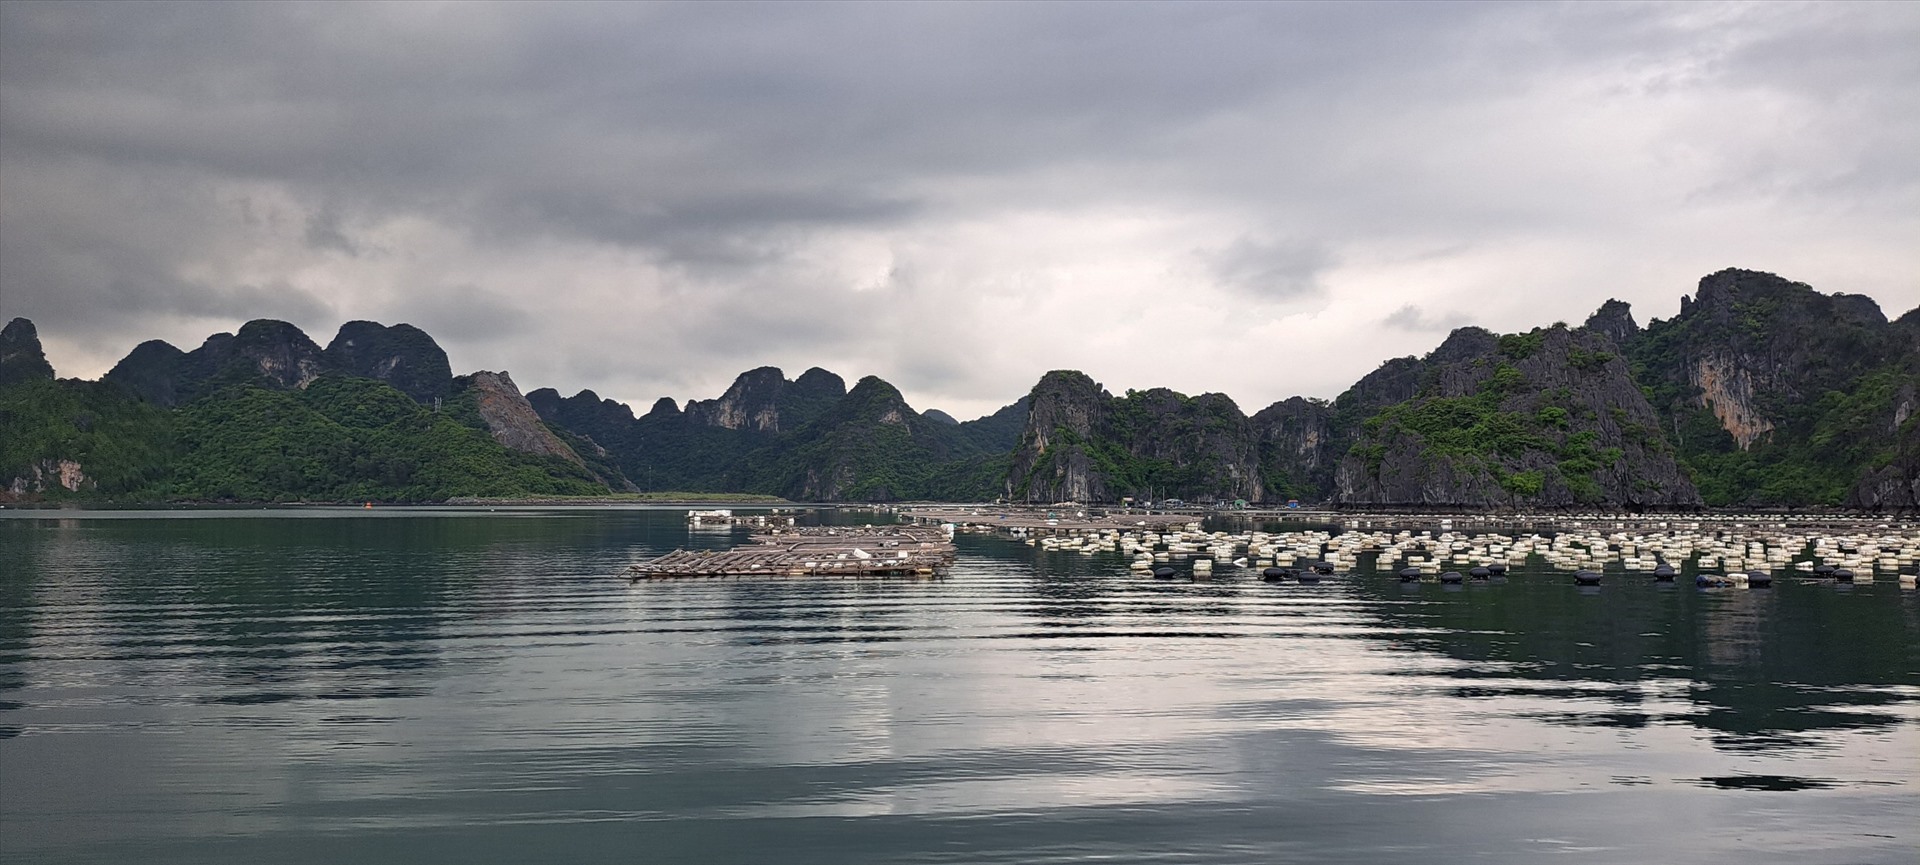 Trên vùng biển TP.Cẩm Phả vẫn còn khá nhiều lồng bè nuôi trồng thủy sản có sử dụng phao xốp. Ảnh: Nguyễn Hùng